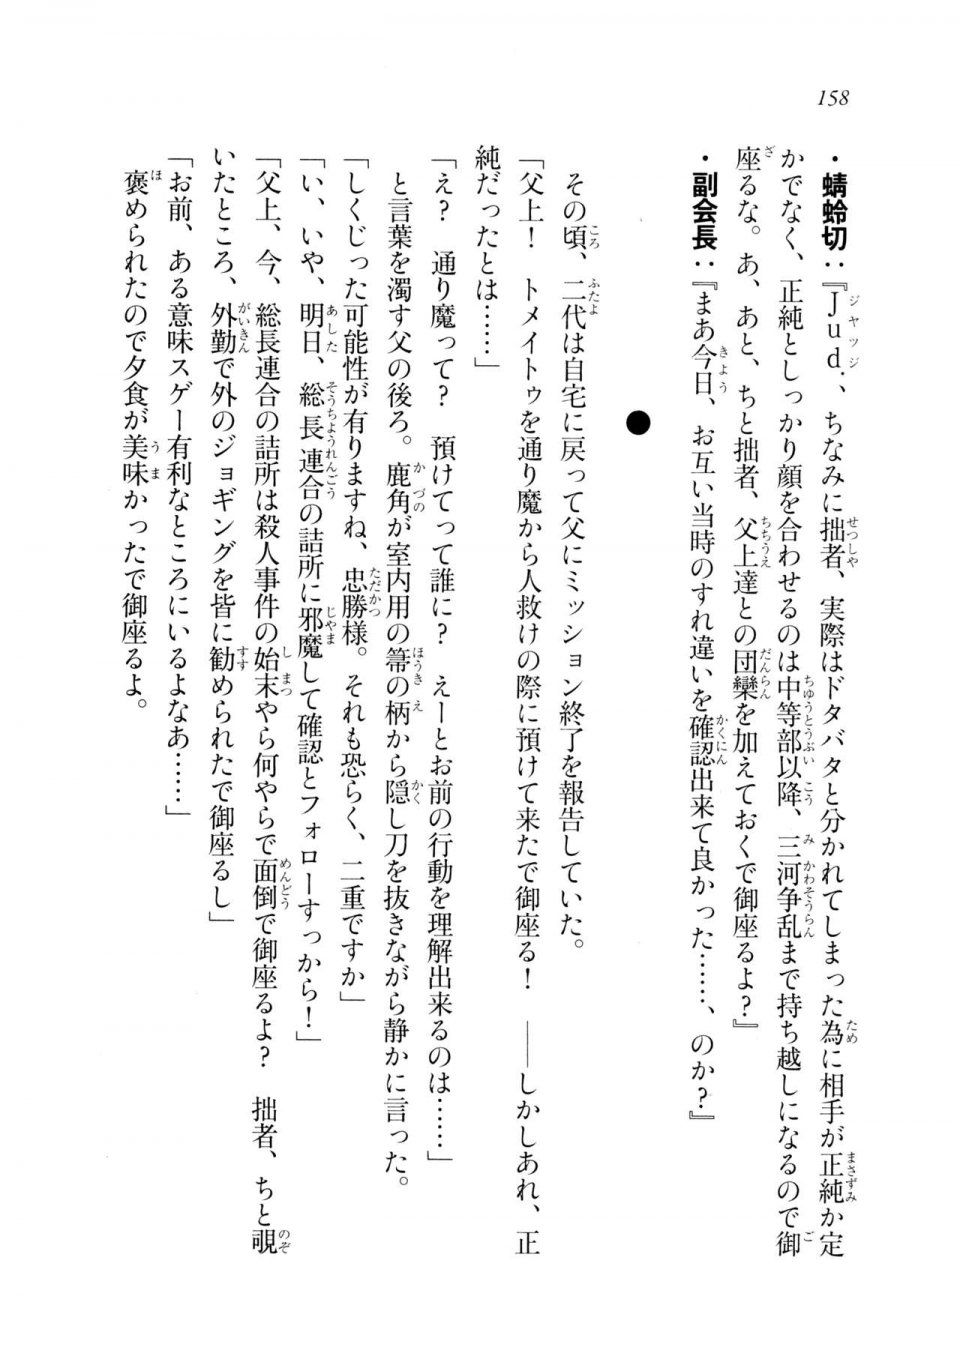 Kyoukai Senjou no Horizon LN Sidestory Vol 2 - Photo #156